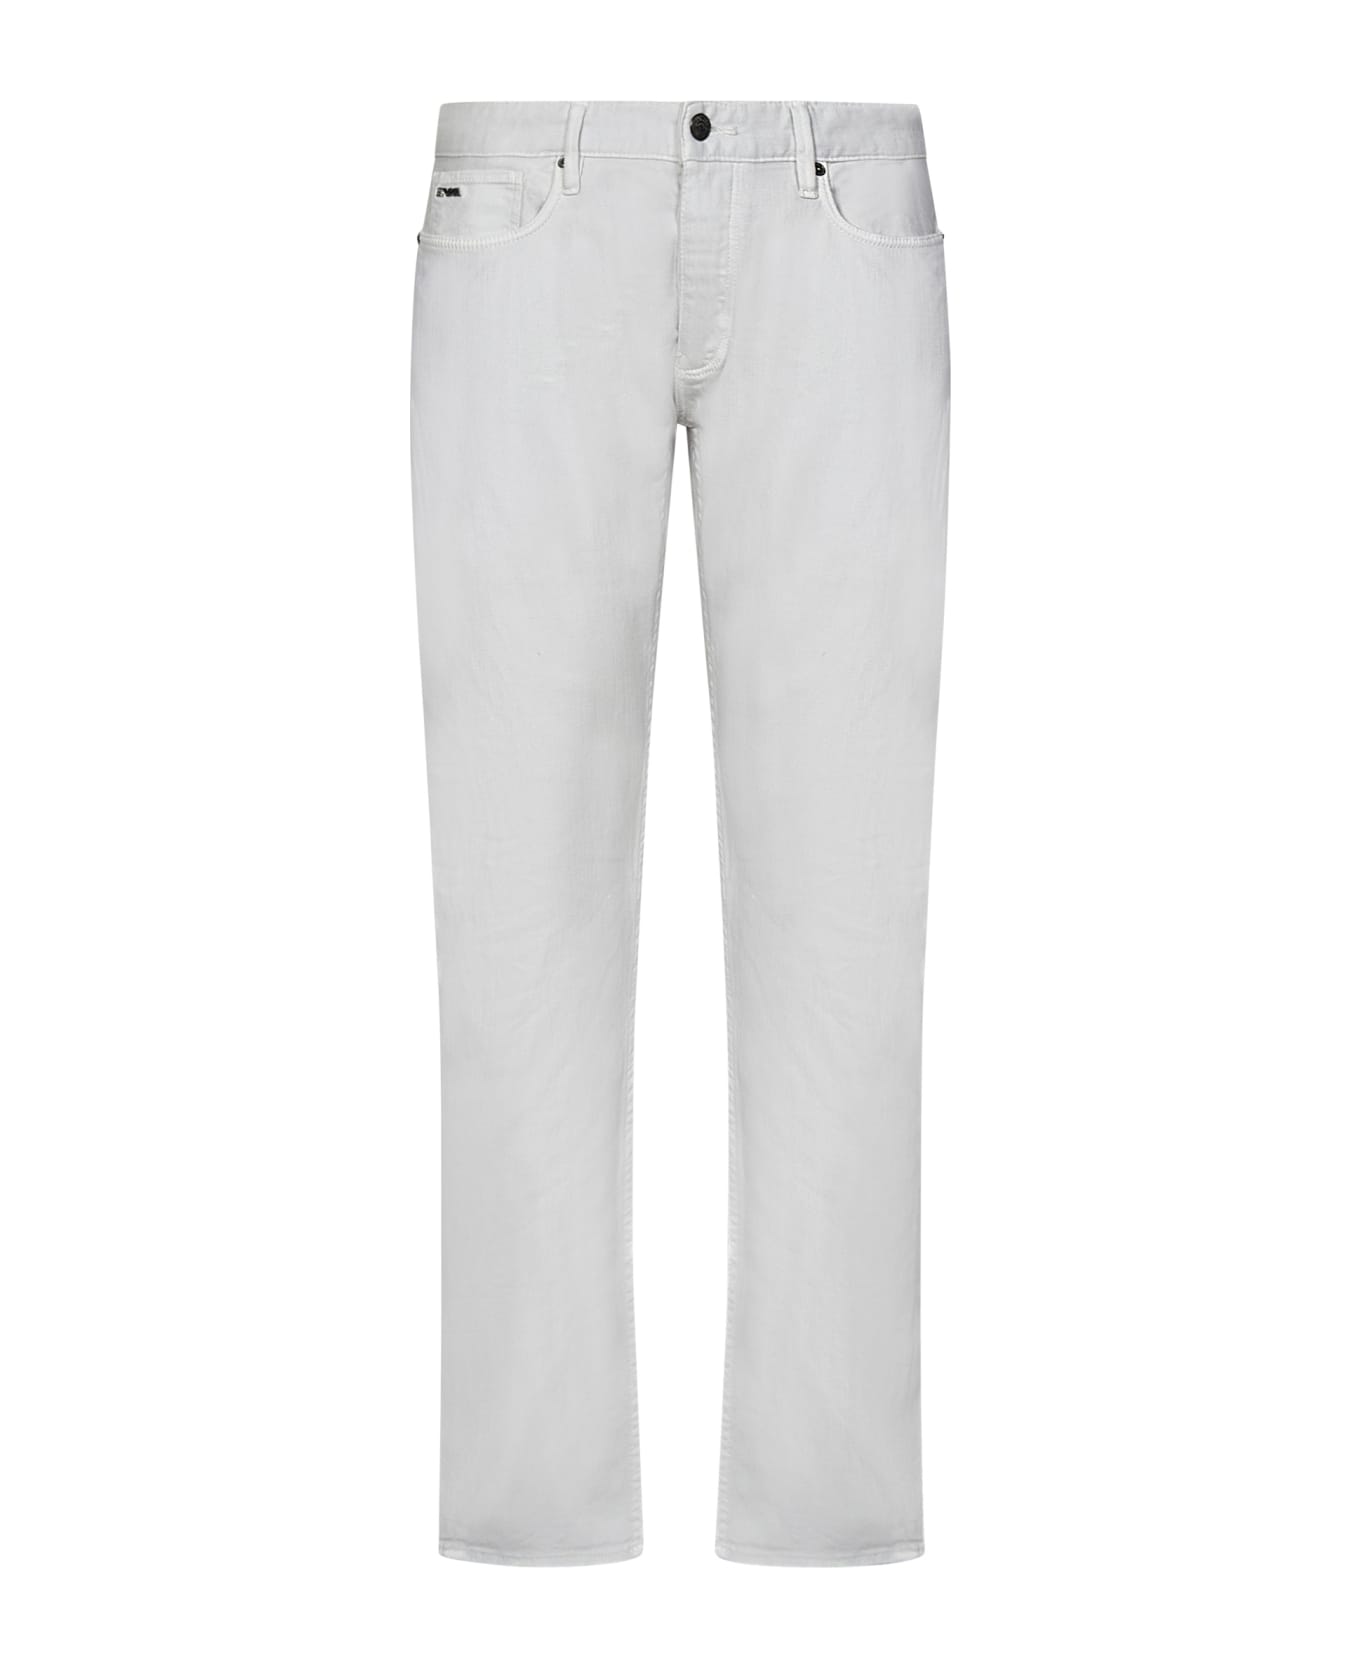 Emporio Armani J75 Jeans - White デニム